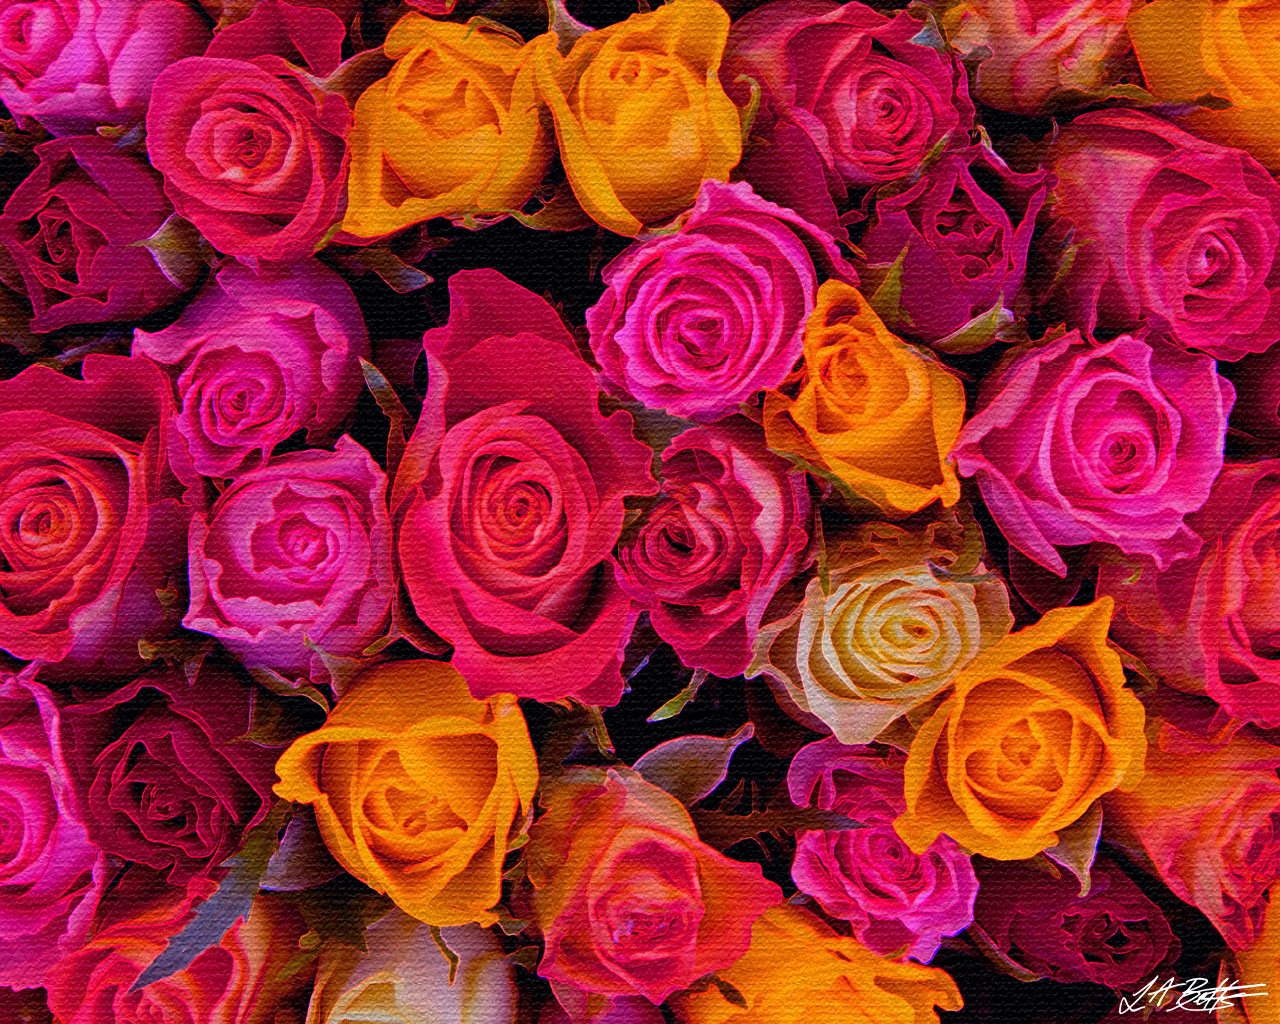 Roses Wallpaper Pics for Screen - WallpaperSafari